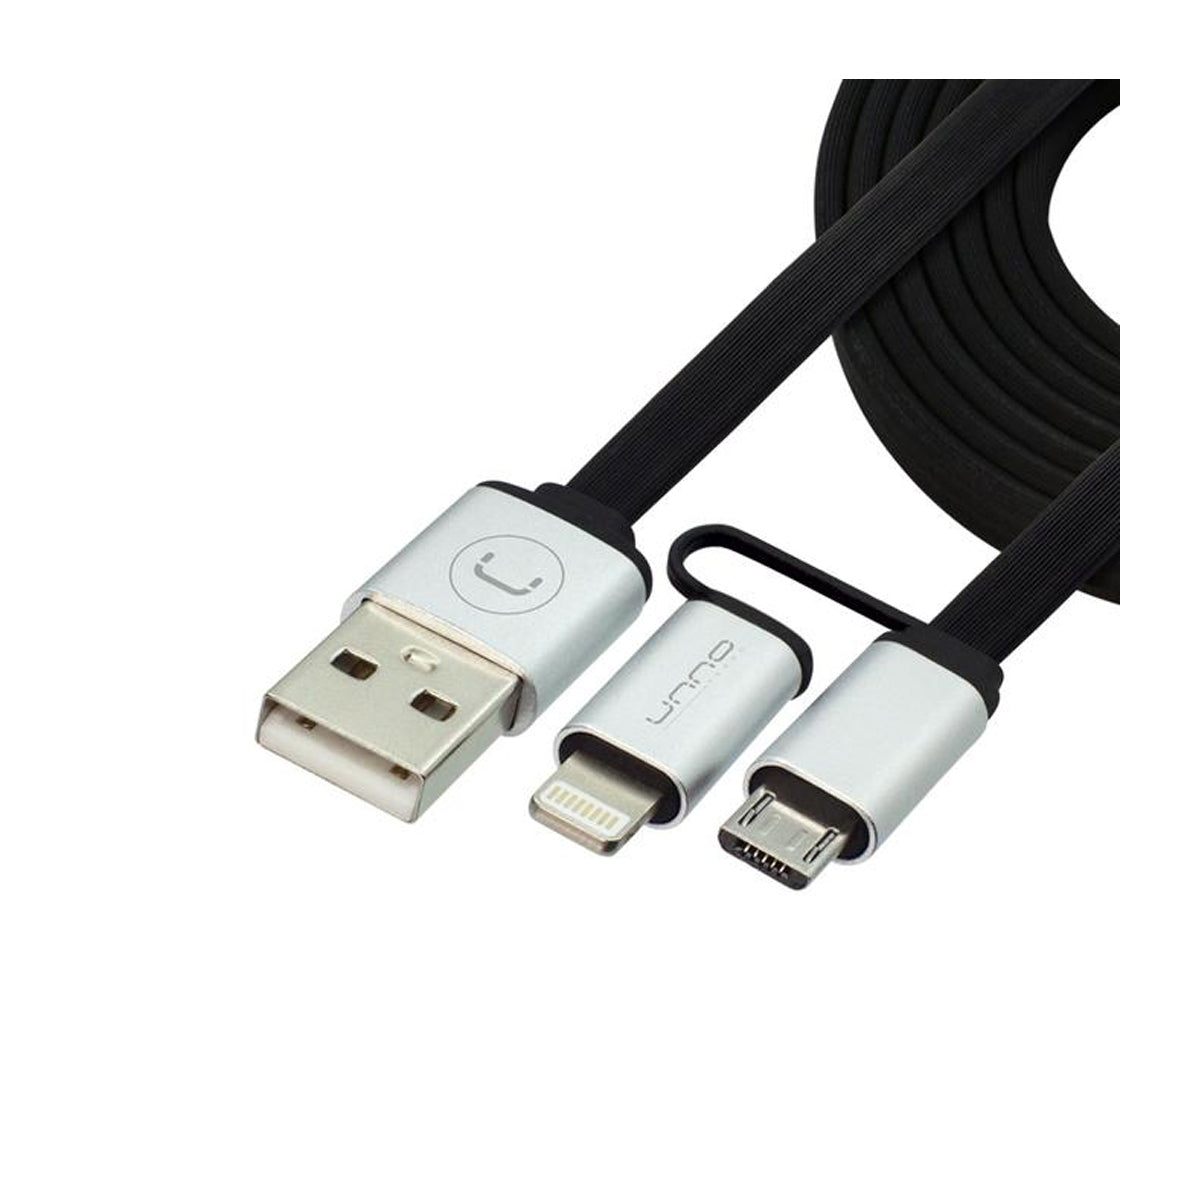 Cable 2en1 Lightning y Micro-USB Unno